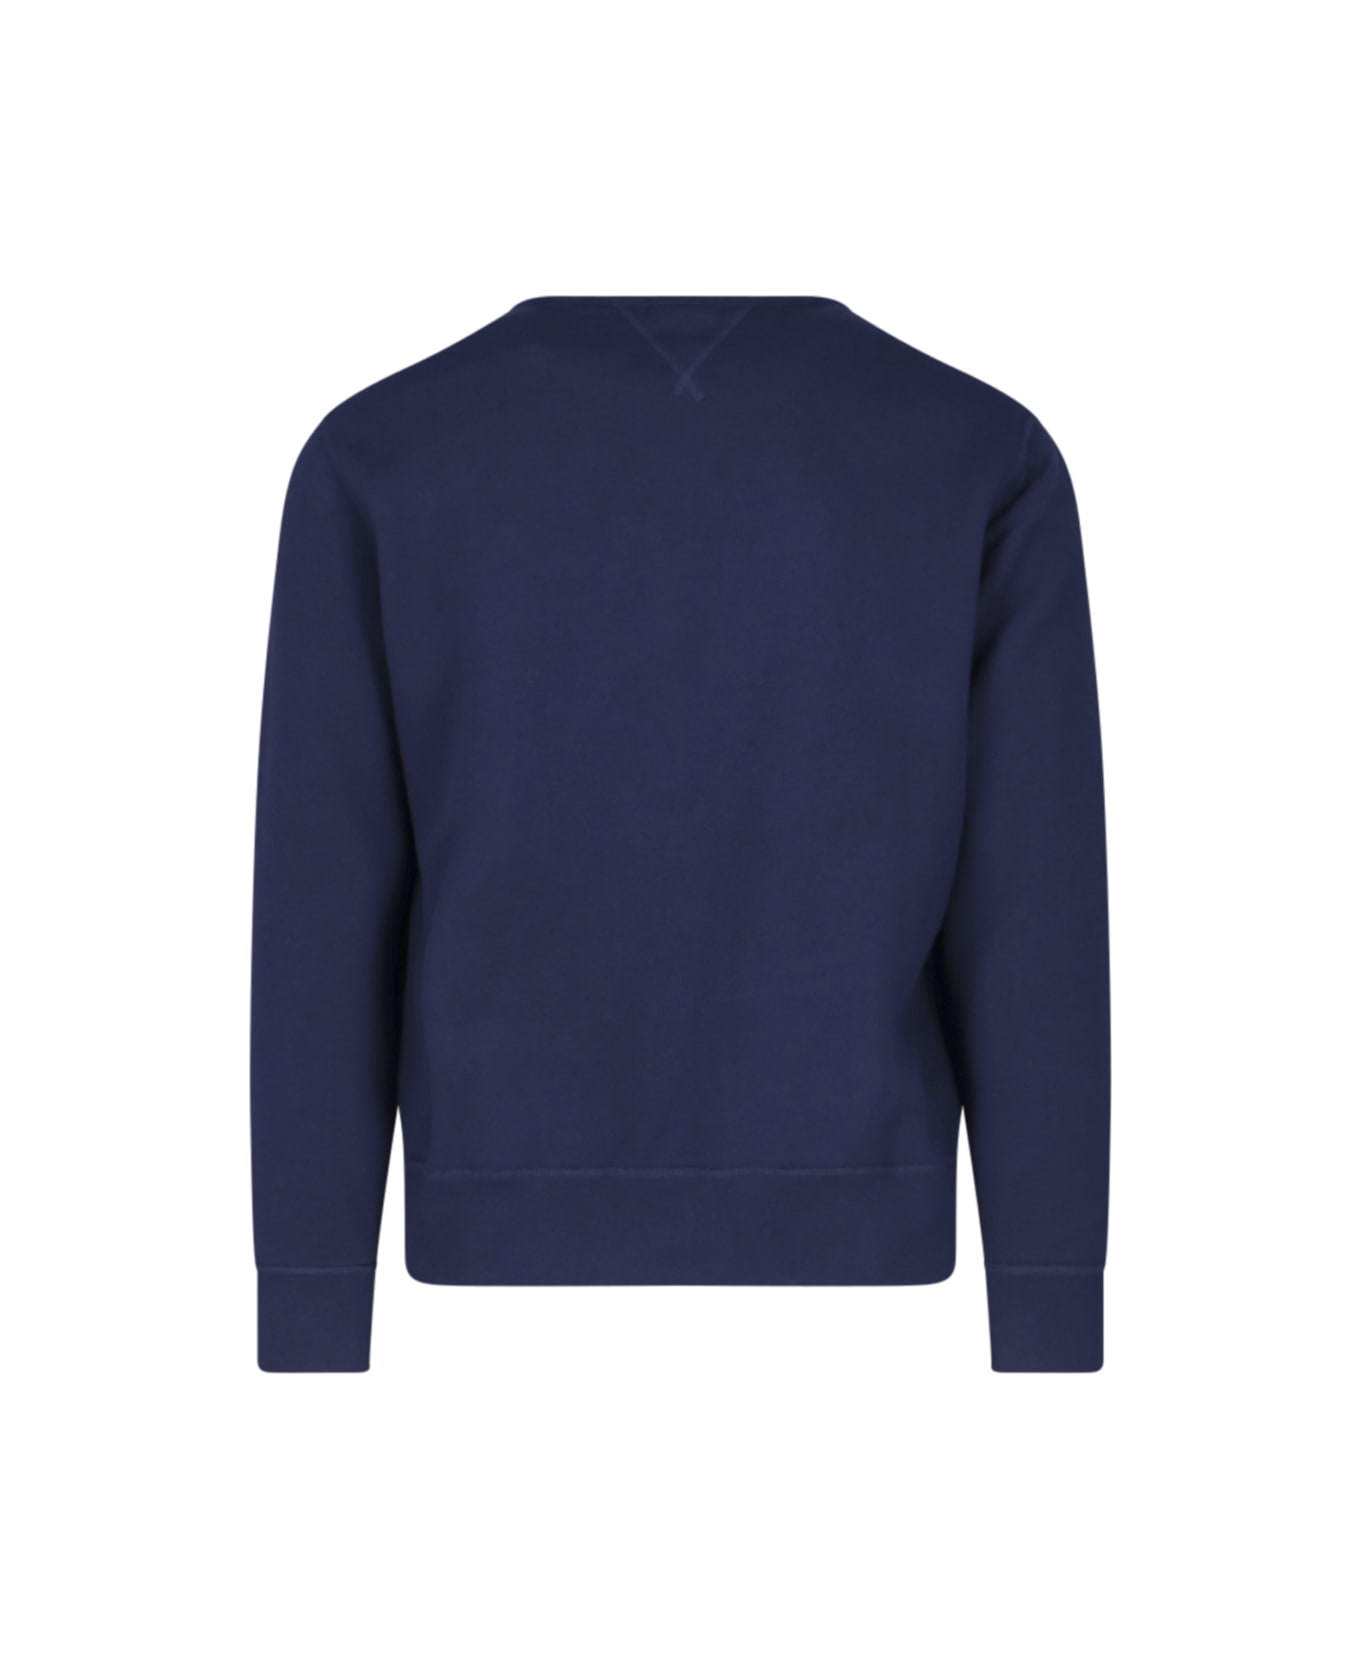 Polo Ralph Lauren 'rl' Crew Neck Sweatshirt - Blue